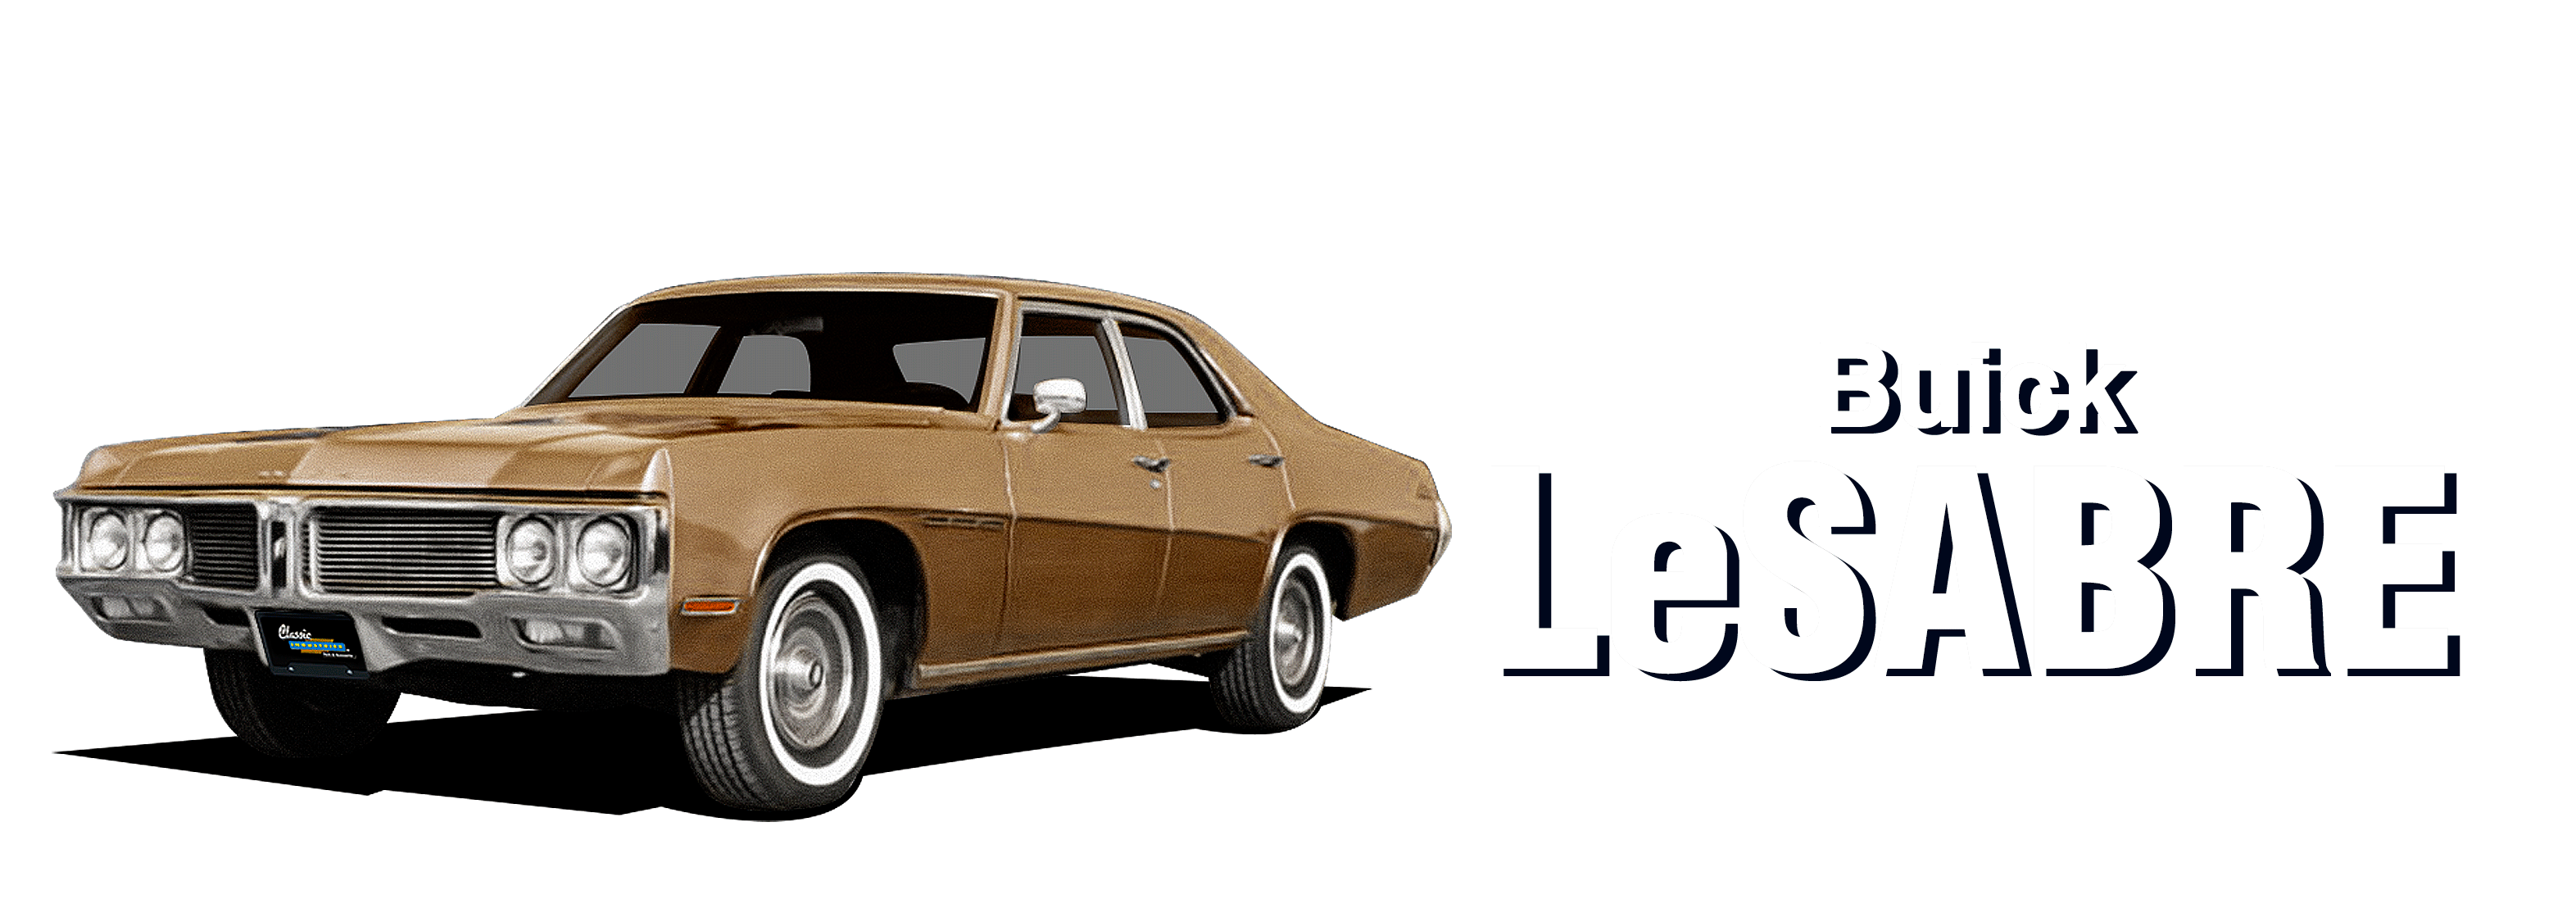 Buick-LeSabre-vehicle-desktop-2023